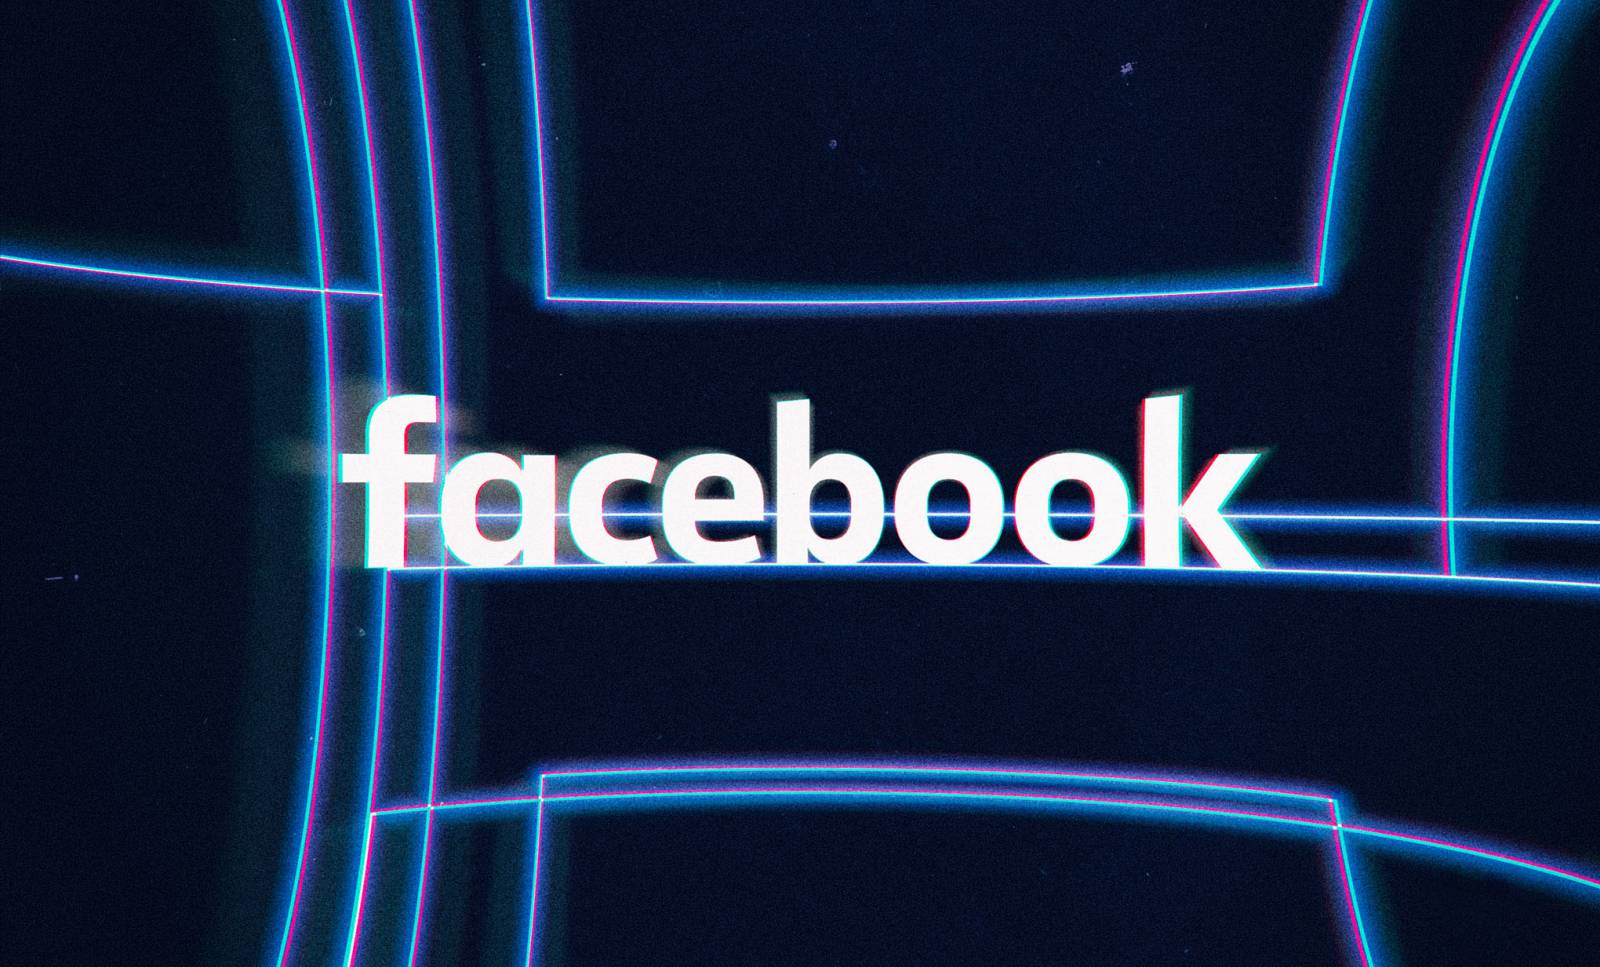 Facebook Actualizarea Noua disponibila pentru Telefoane Tablete